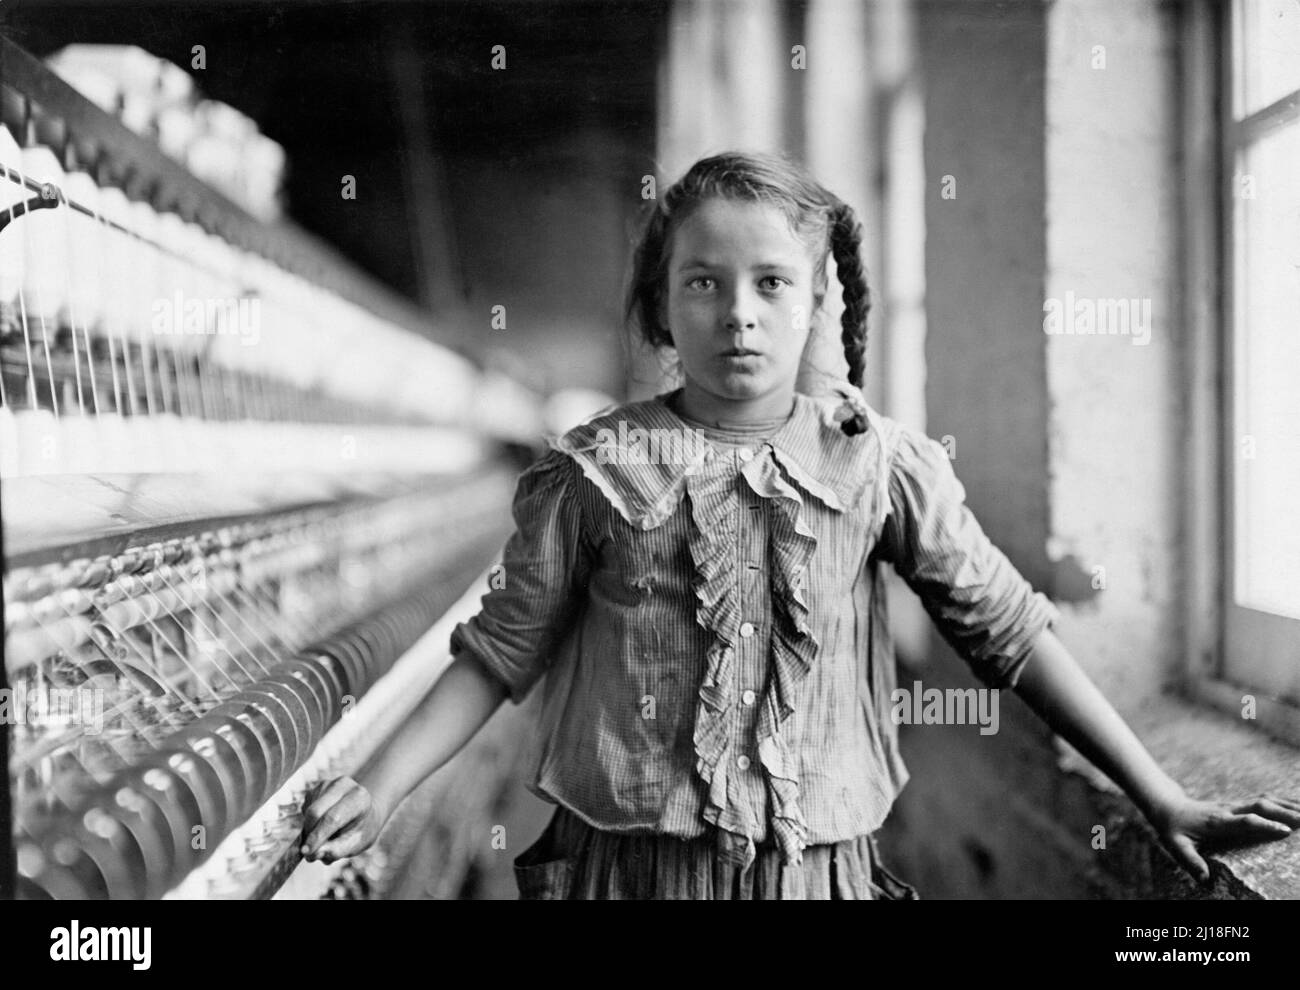 Cotonnier-travailleur, Caroline du Nord, par Lewis Hine (1874-1940), 1908. La photographie montre une jeune fille de douze ou treize ans travaillant dans une usine de coton comme travail des enfants. Banque D'Images